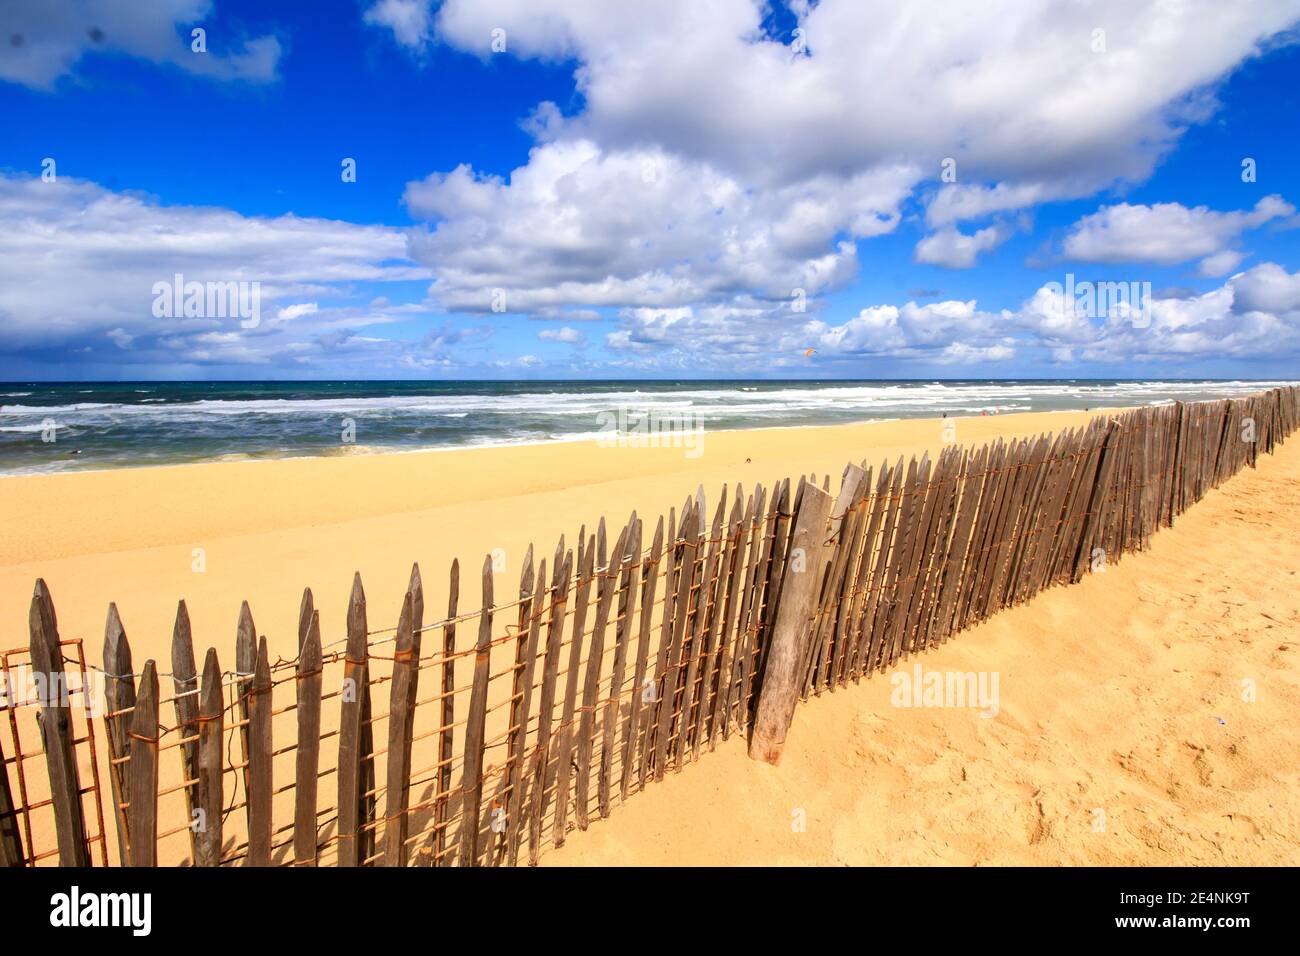 Bellissima spiaggia di sabbia sul lato della costa atlantica francese. Giornata estiva soleggiata con cielo blu e nuvole bianche e tradizionale barriera in legno. Foto Stock